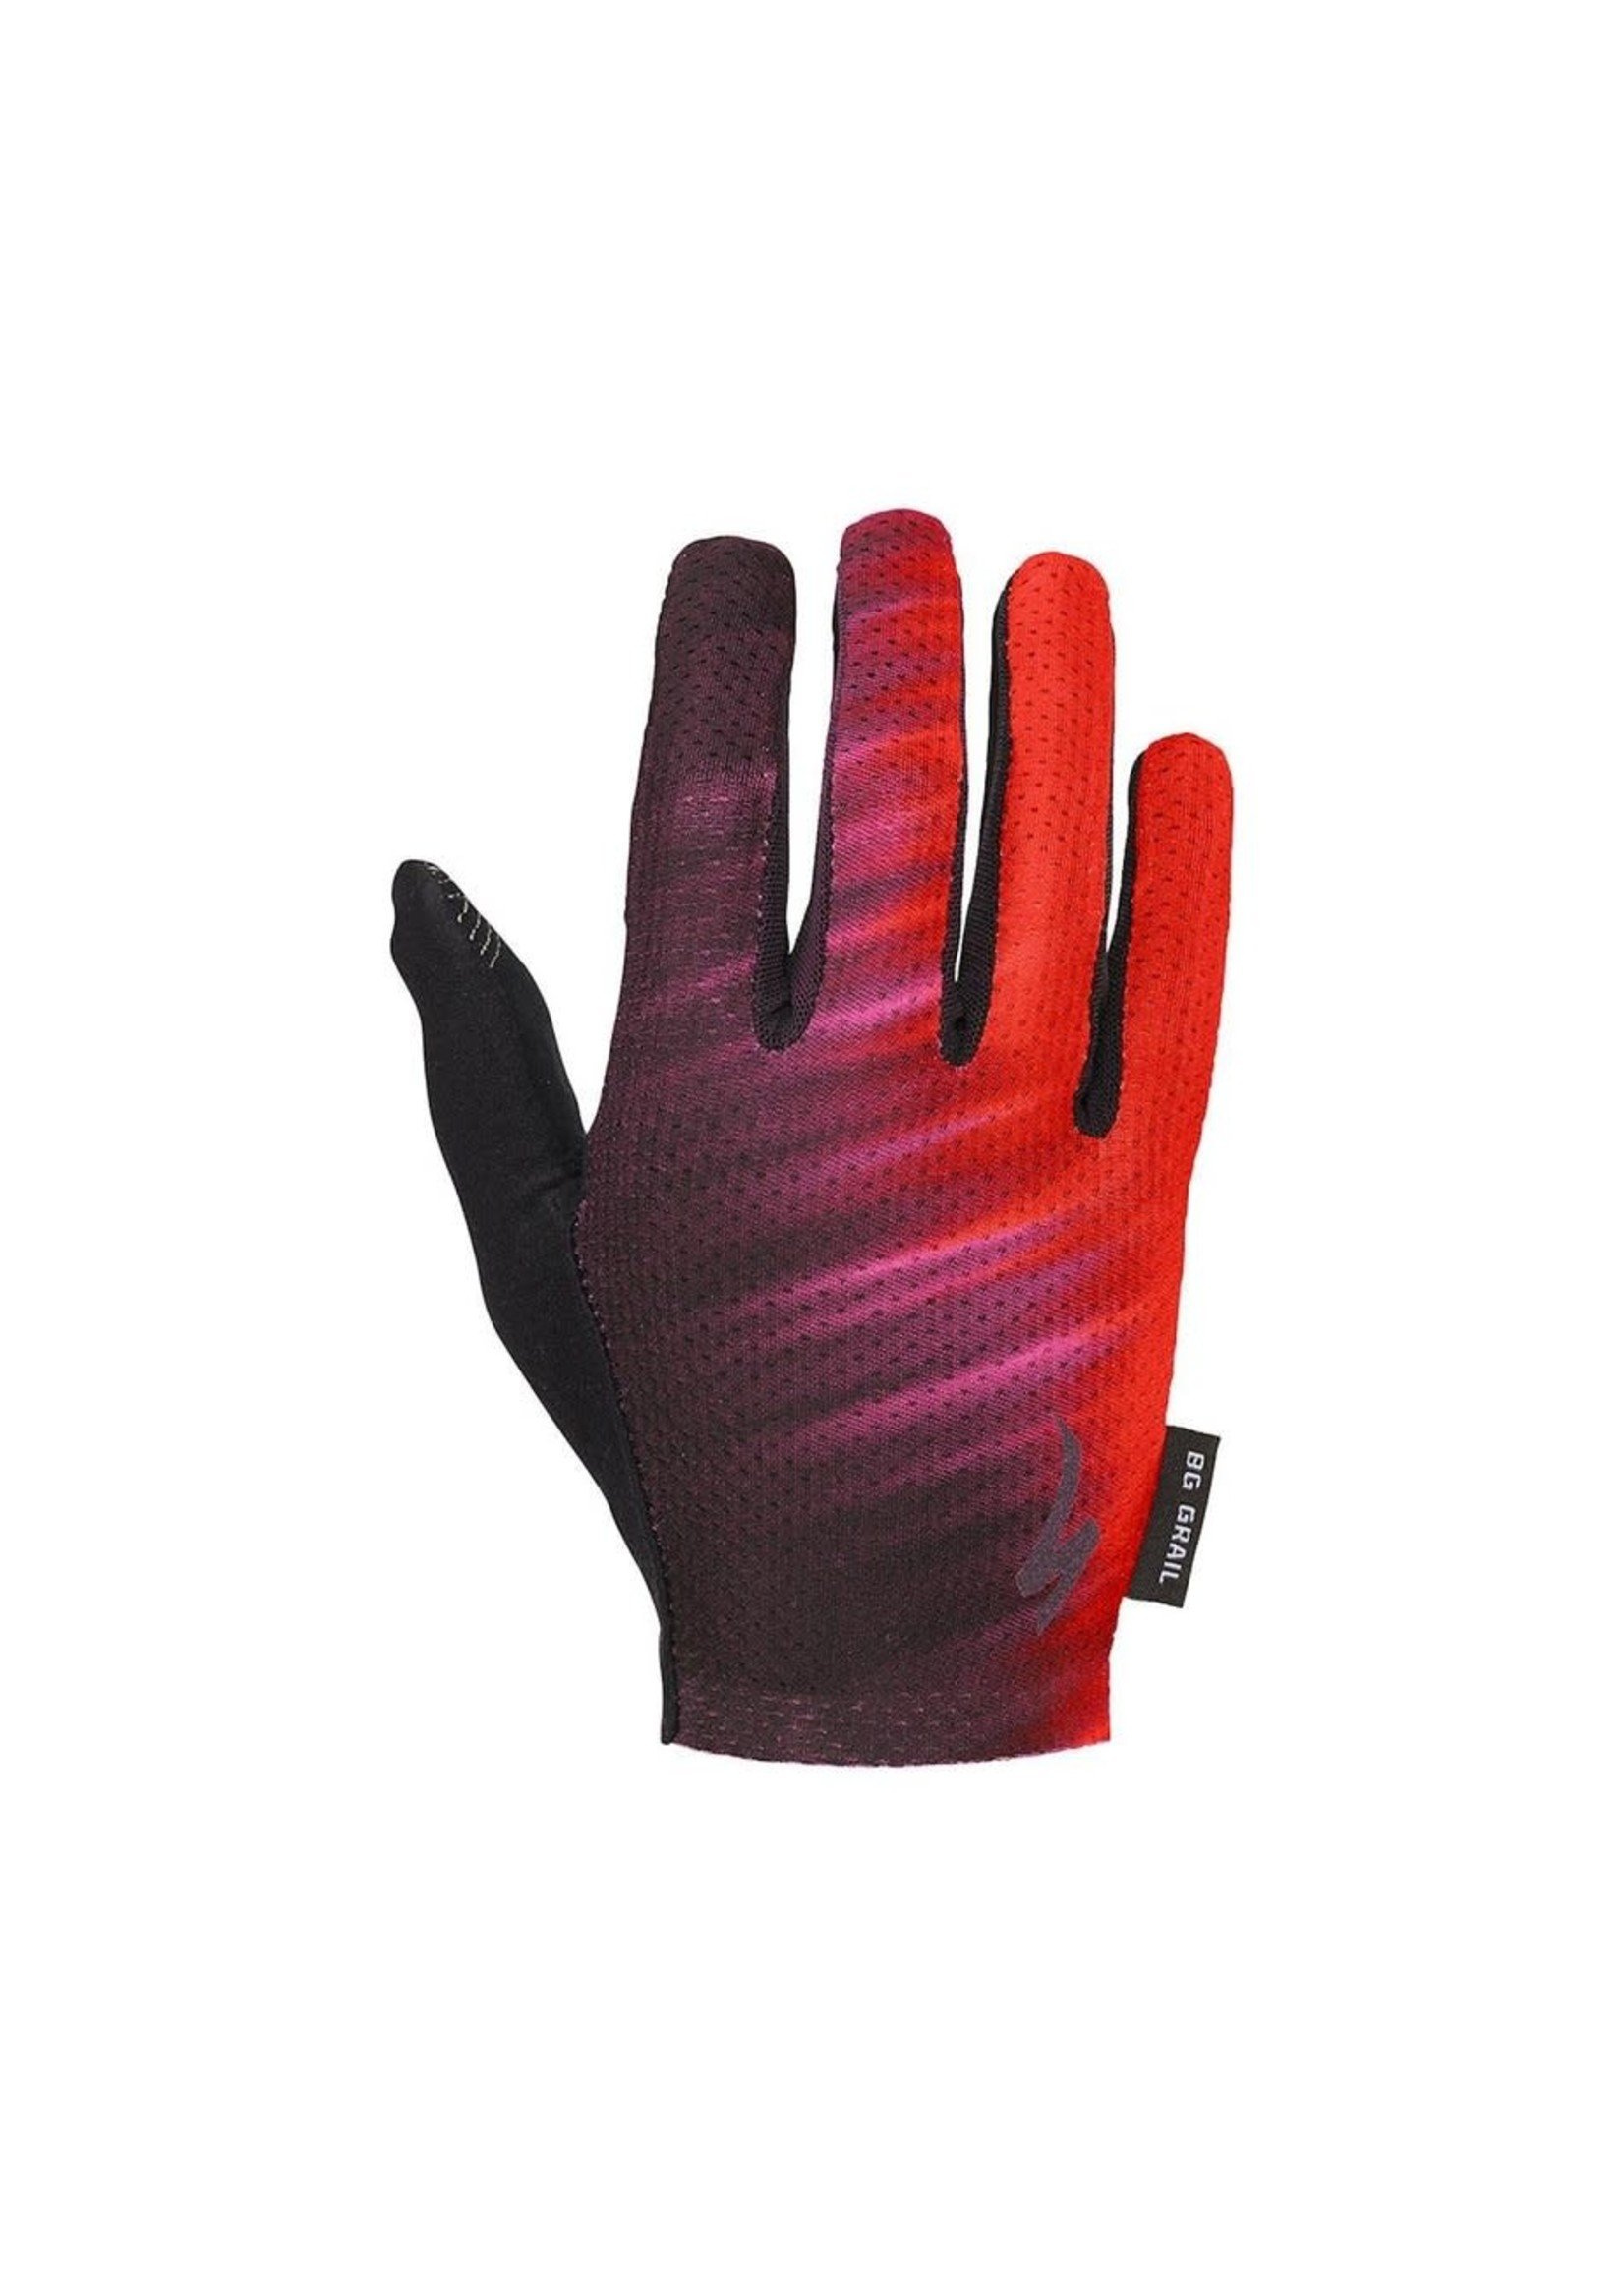 Specialized Specialized Body Geometry Grail Glove, Long Finger Women's